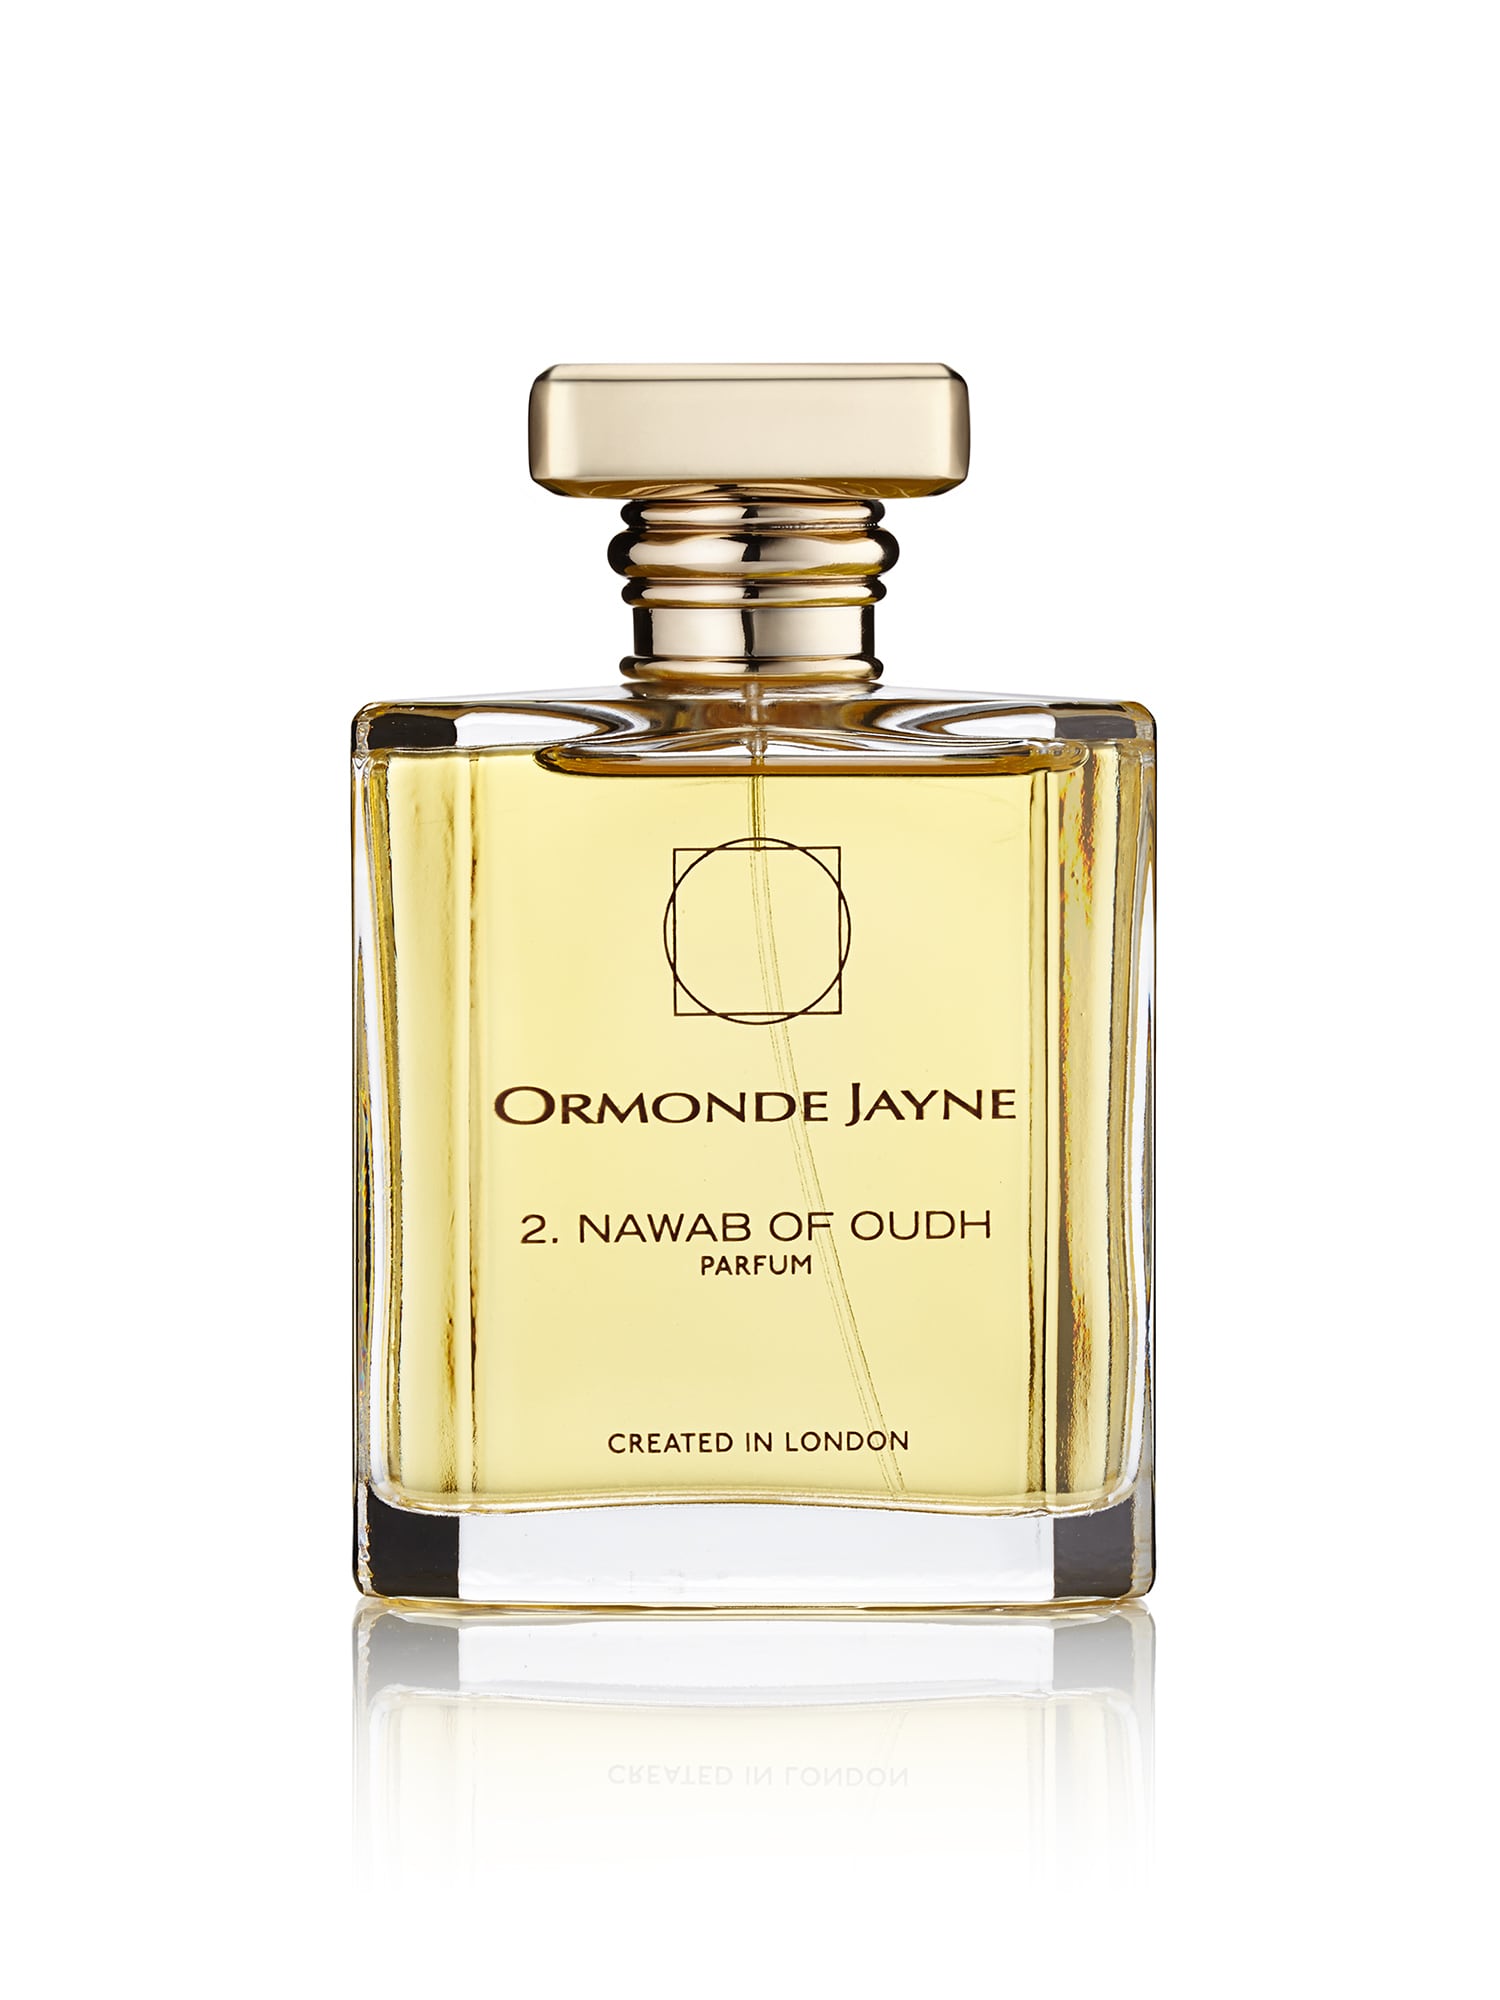 Ormonde Jayne Nawab Of Oudh Parfum